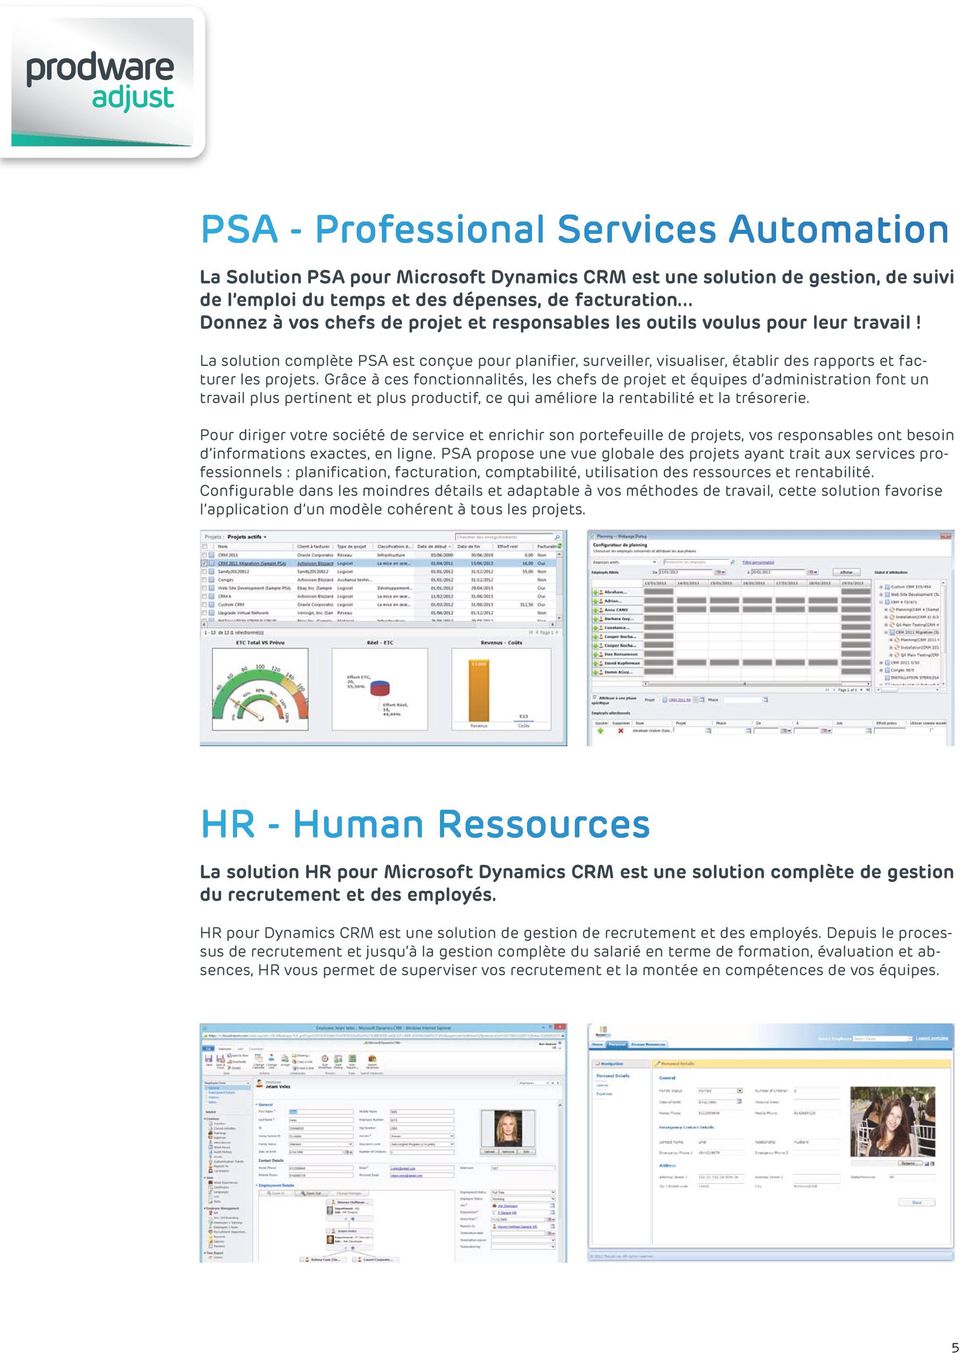 La solution complète PSA est conçue pour planifier, surveiller, visualiser, établir des rapports et facturer les projets.